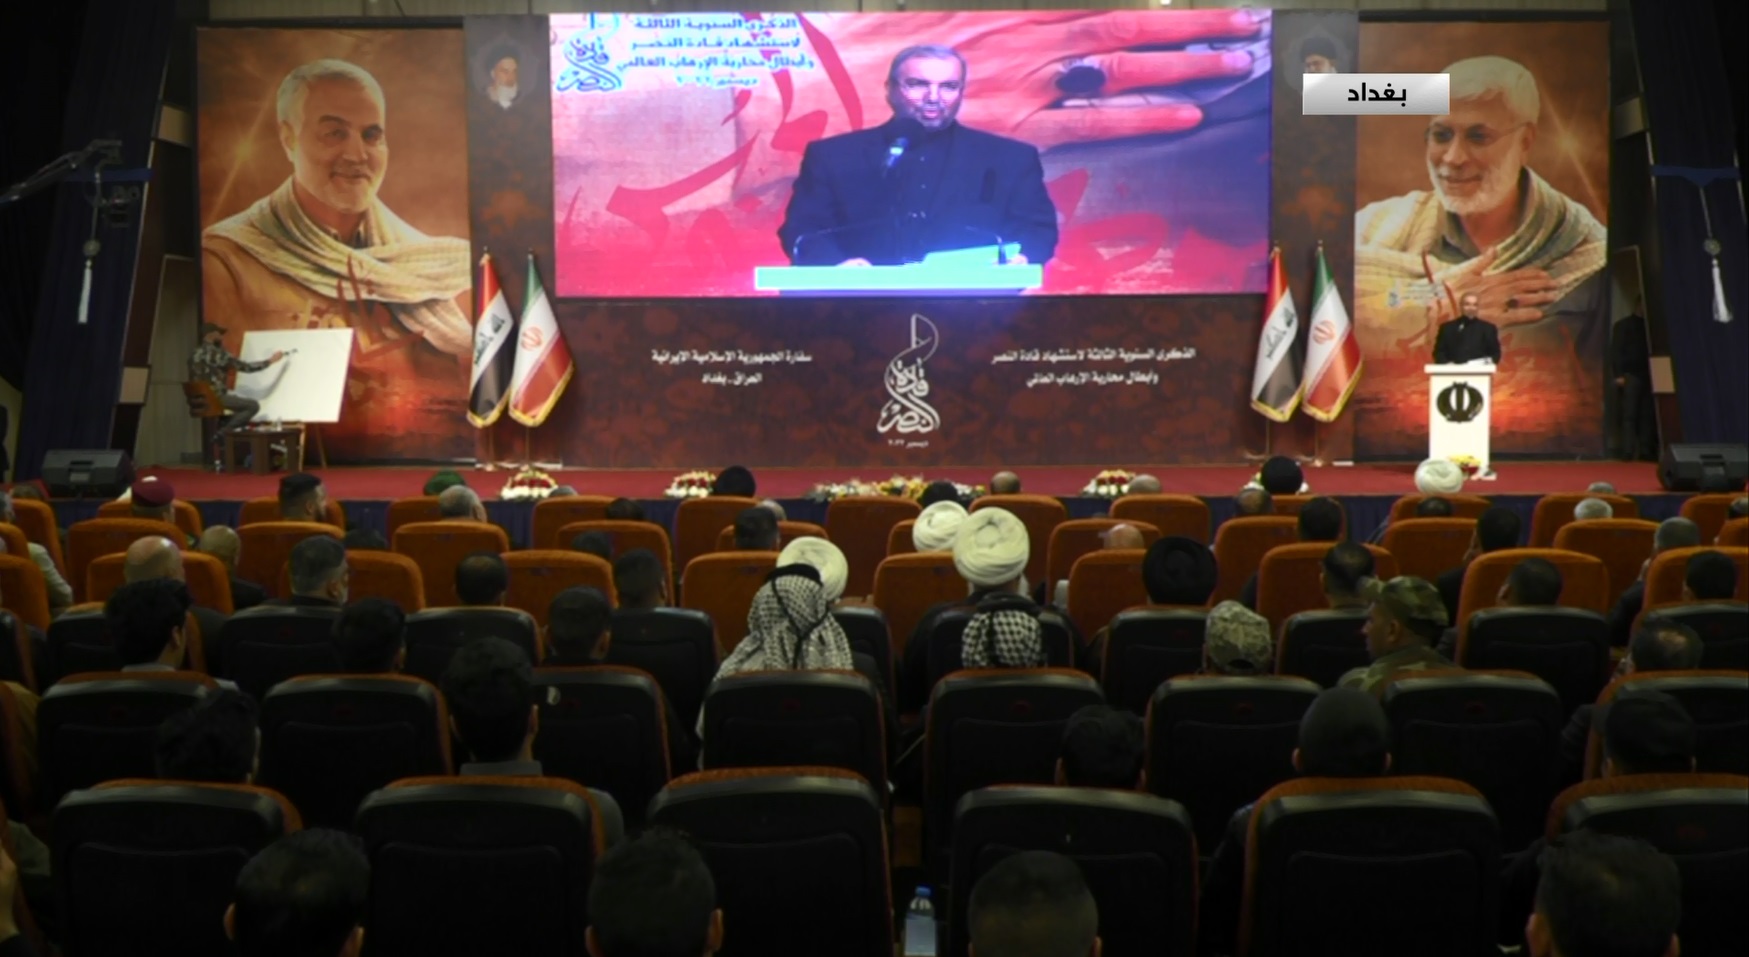 السفير الايراني في العراق  : الانتقام سيبقى يلاحق أميركا لاغتيالها قادة النصر